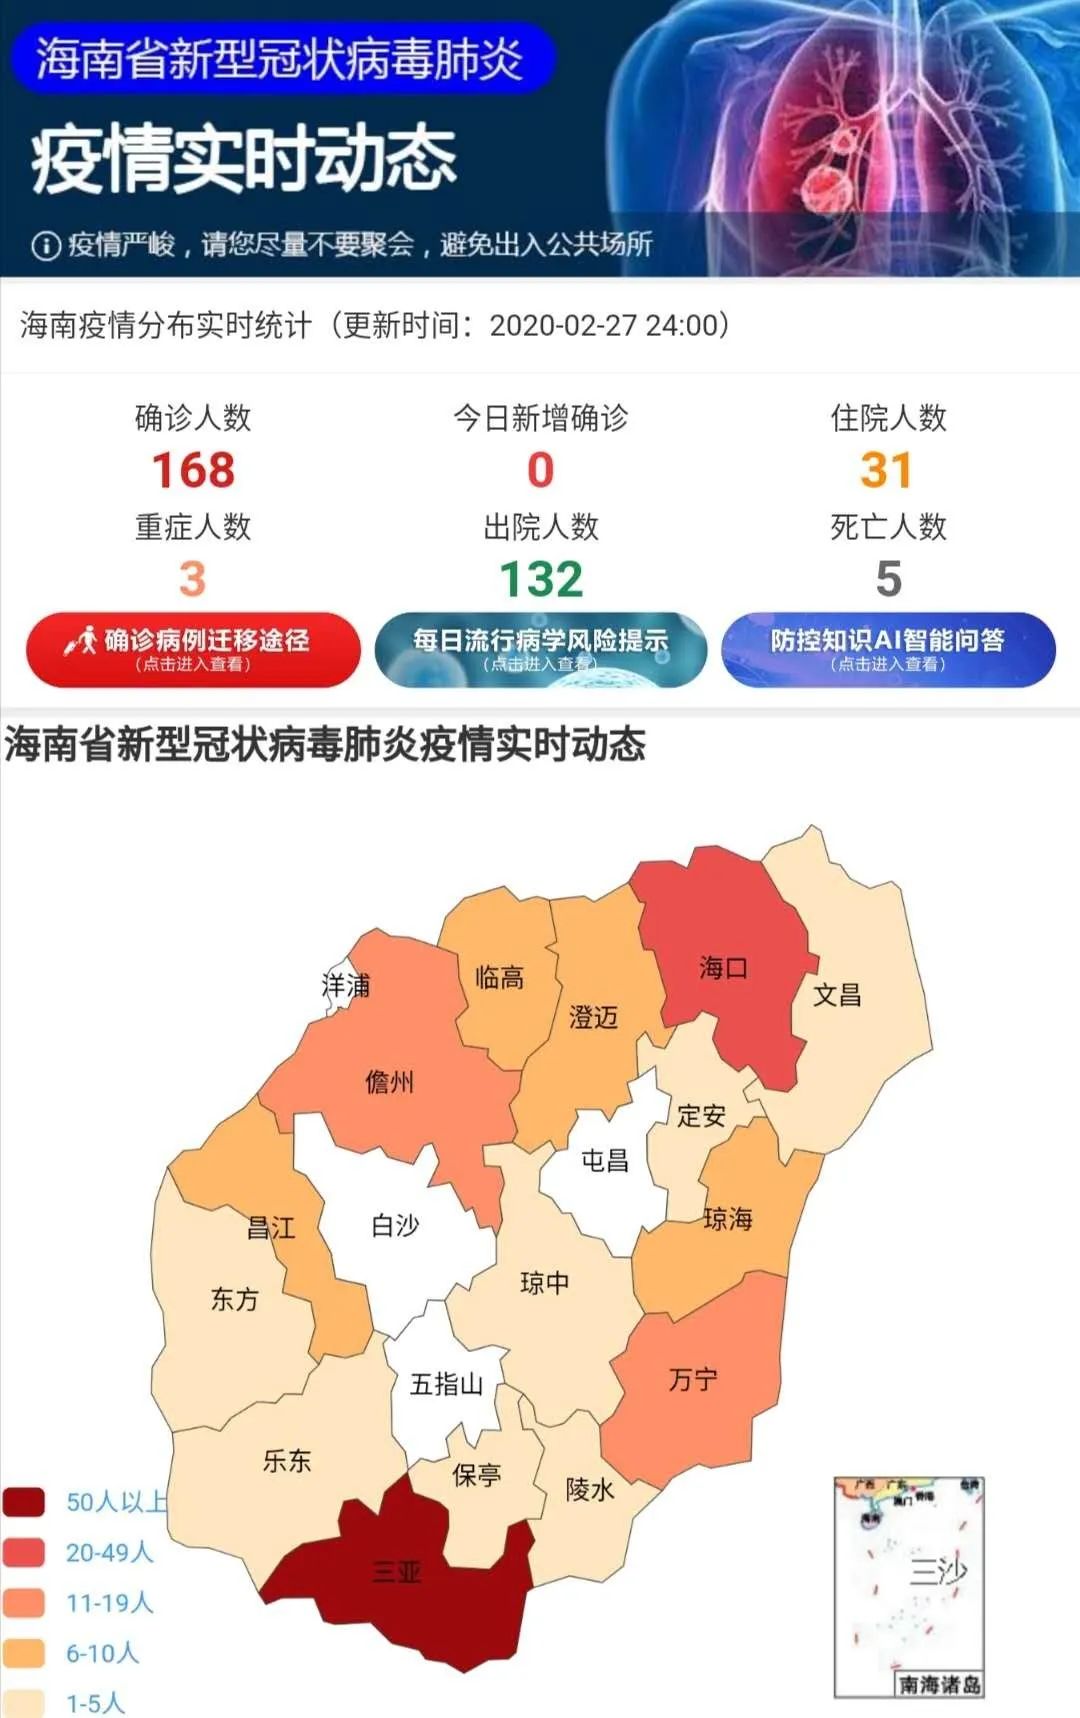 截至2月27日24时,海南省累计报告新型冠状病毒肺炎确诊病例168例,重症